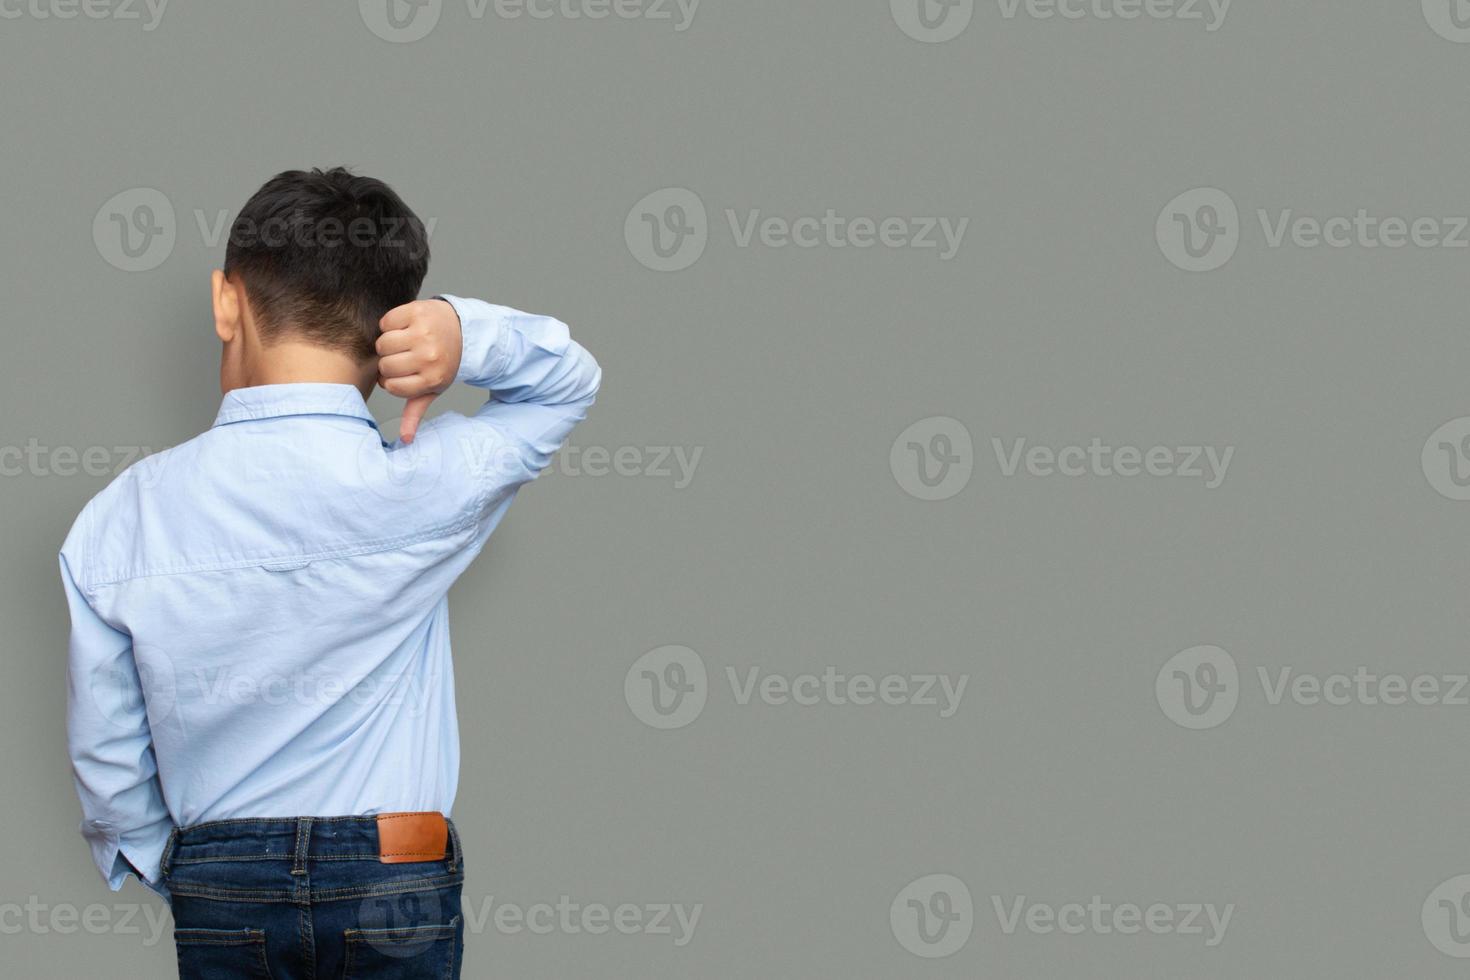 kleine jongen met een formeel shirt geïsoleerd op een effen achtergrond print mockup concept kopie ruimte foto